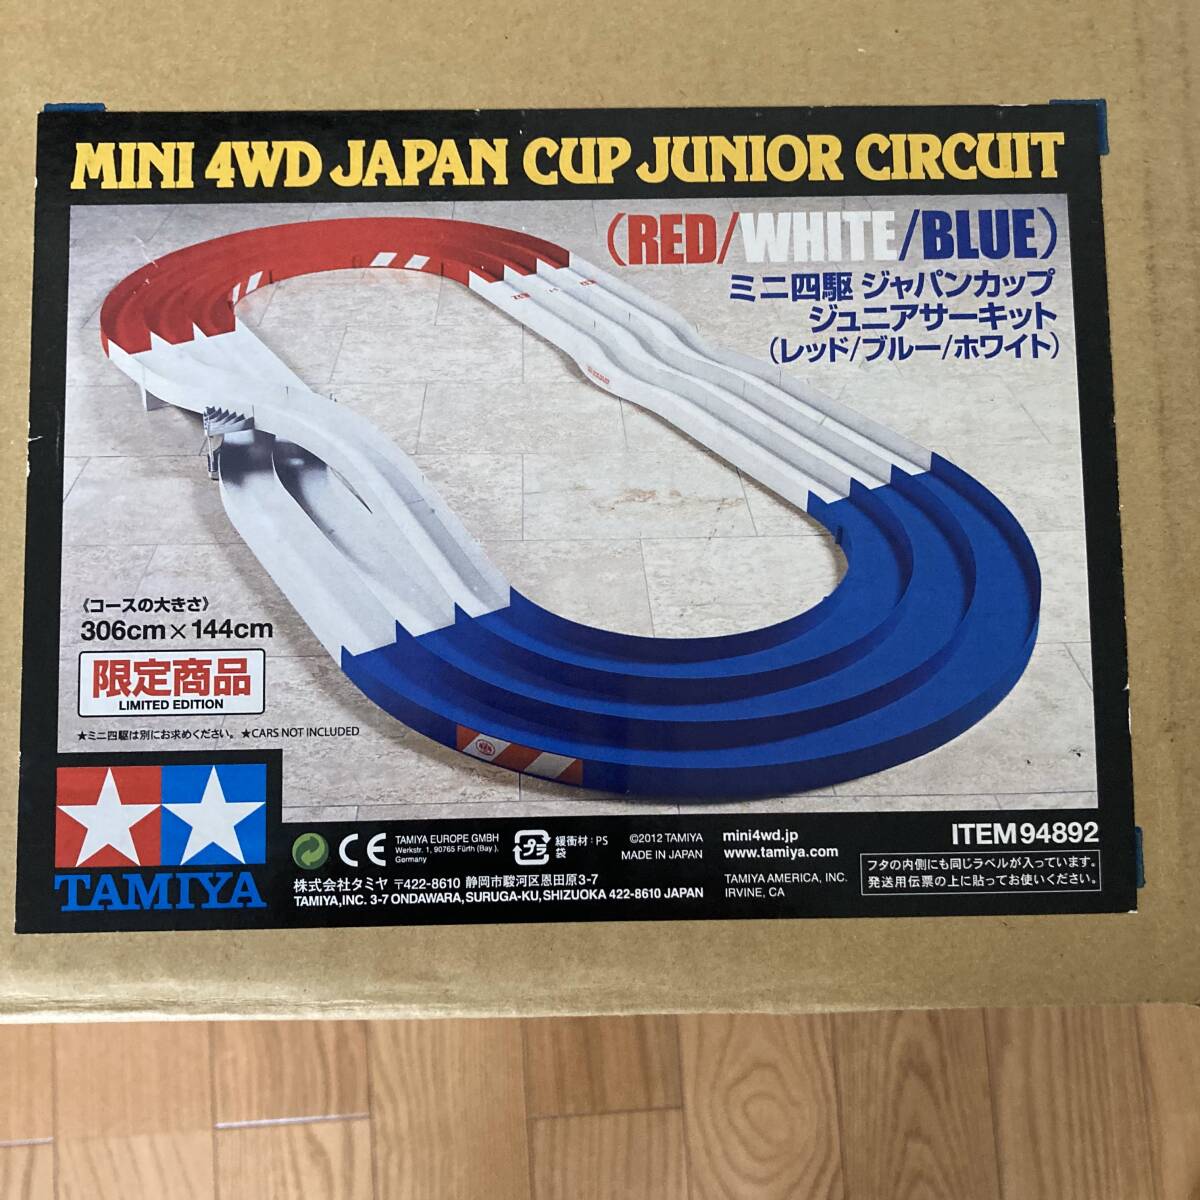 タミヤ TAMIYA ミニ四駆 ジャパンカップ ジュニア サーキット 限定商品 トリコロール カラー 1/32 スケール サーキットコース 94892 レース